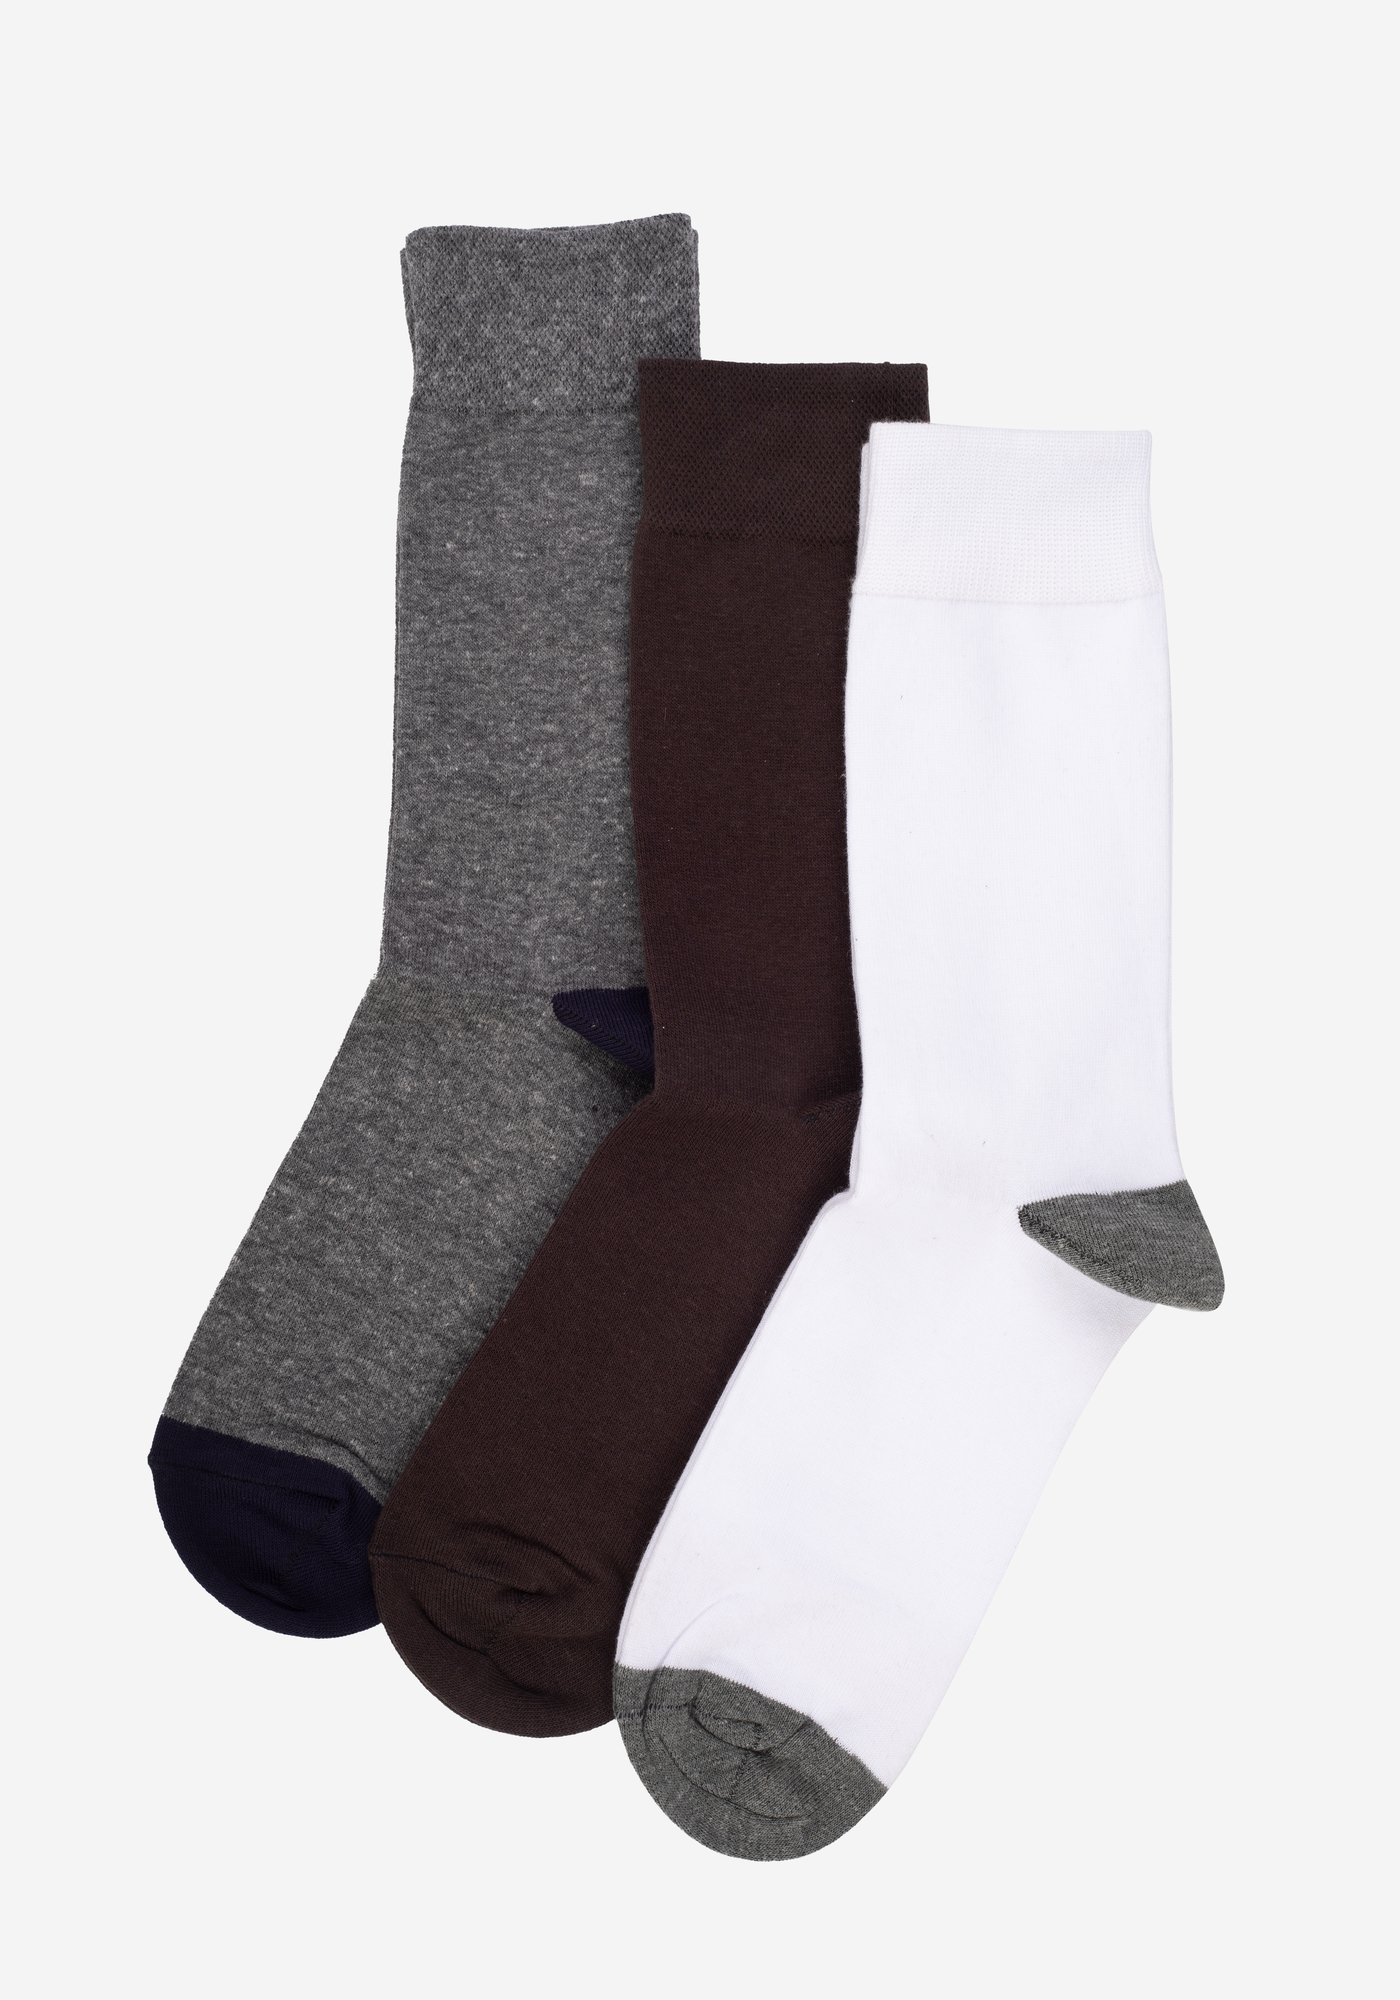 P3*1-702-9 / 3 Long Socks Pack